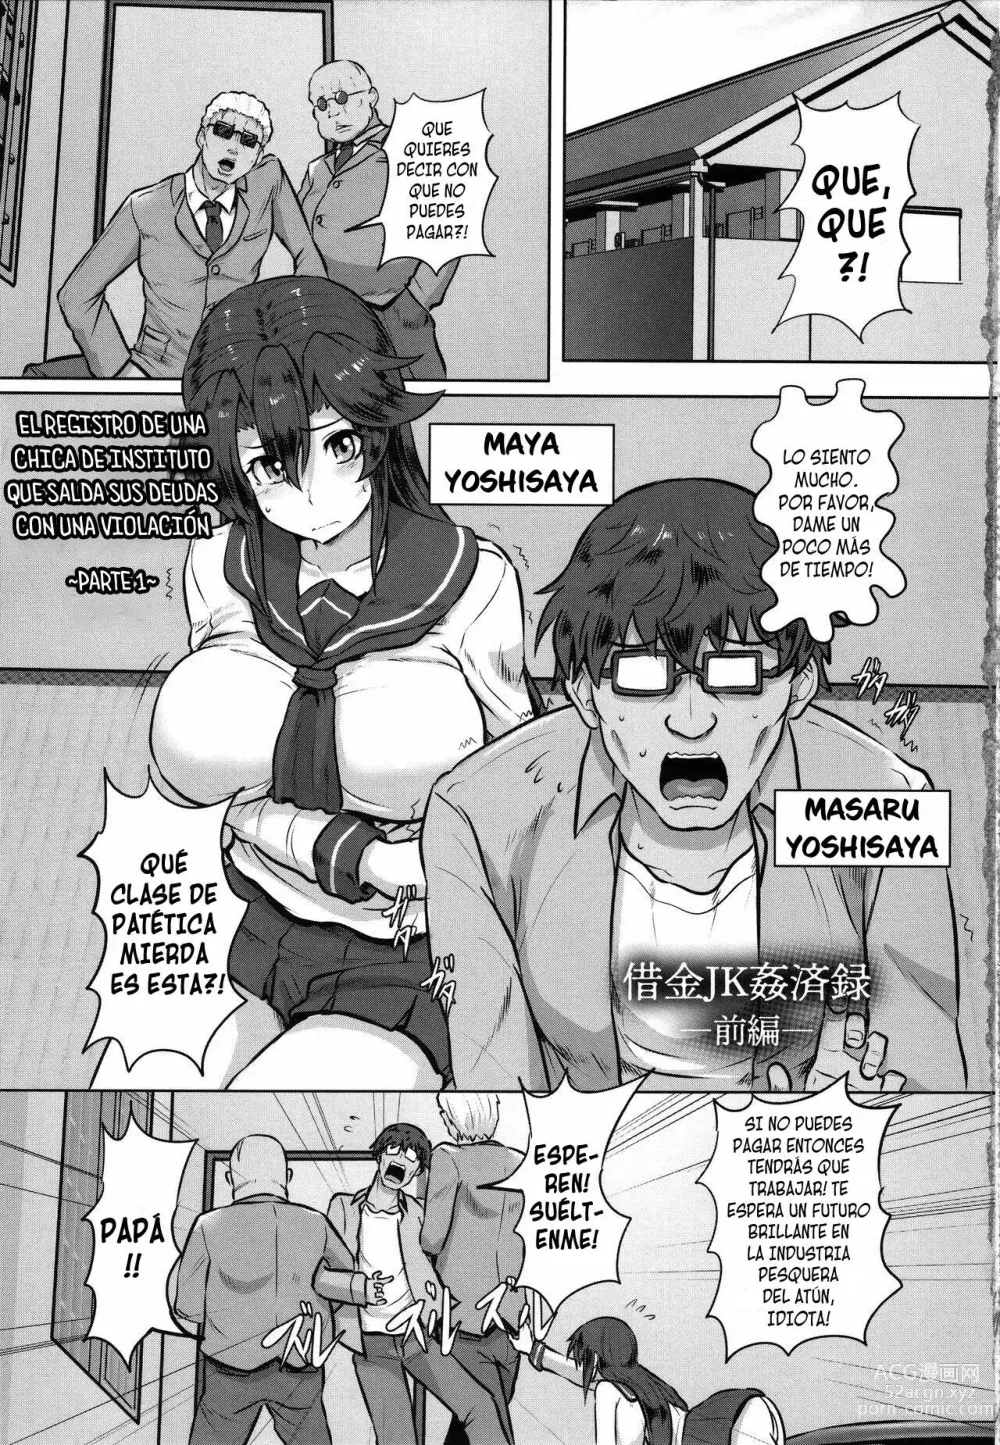 Page 1 of manga El registro de una chica de instituto que salda sus deudas con una violación 1-3